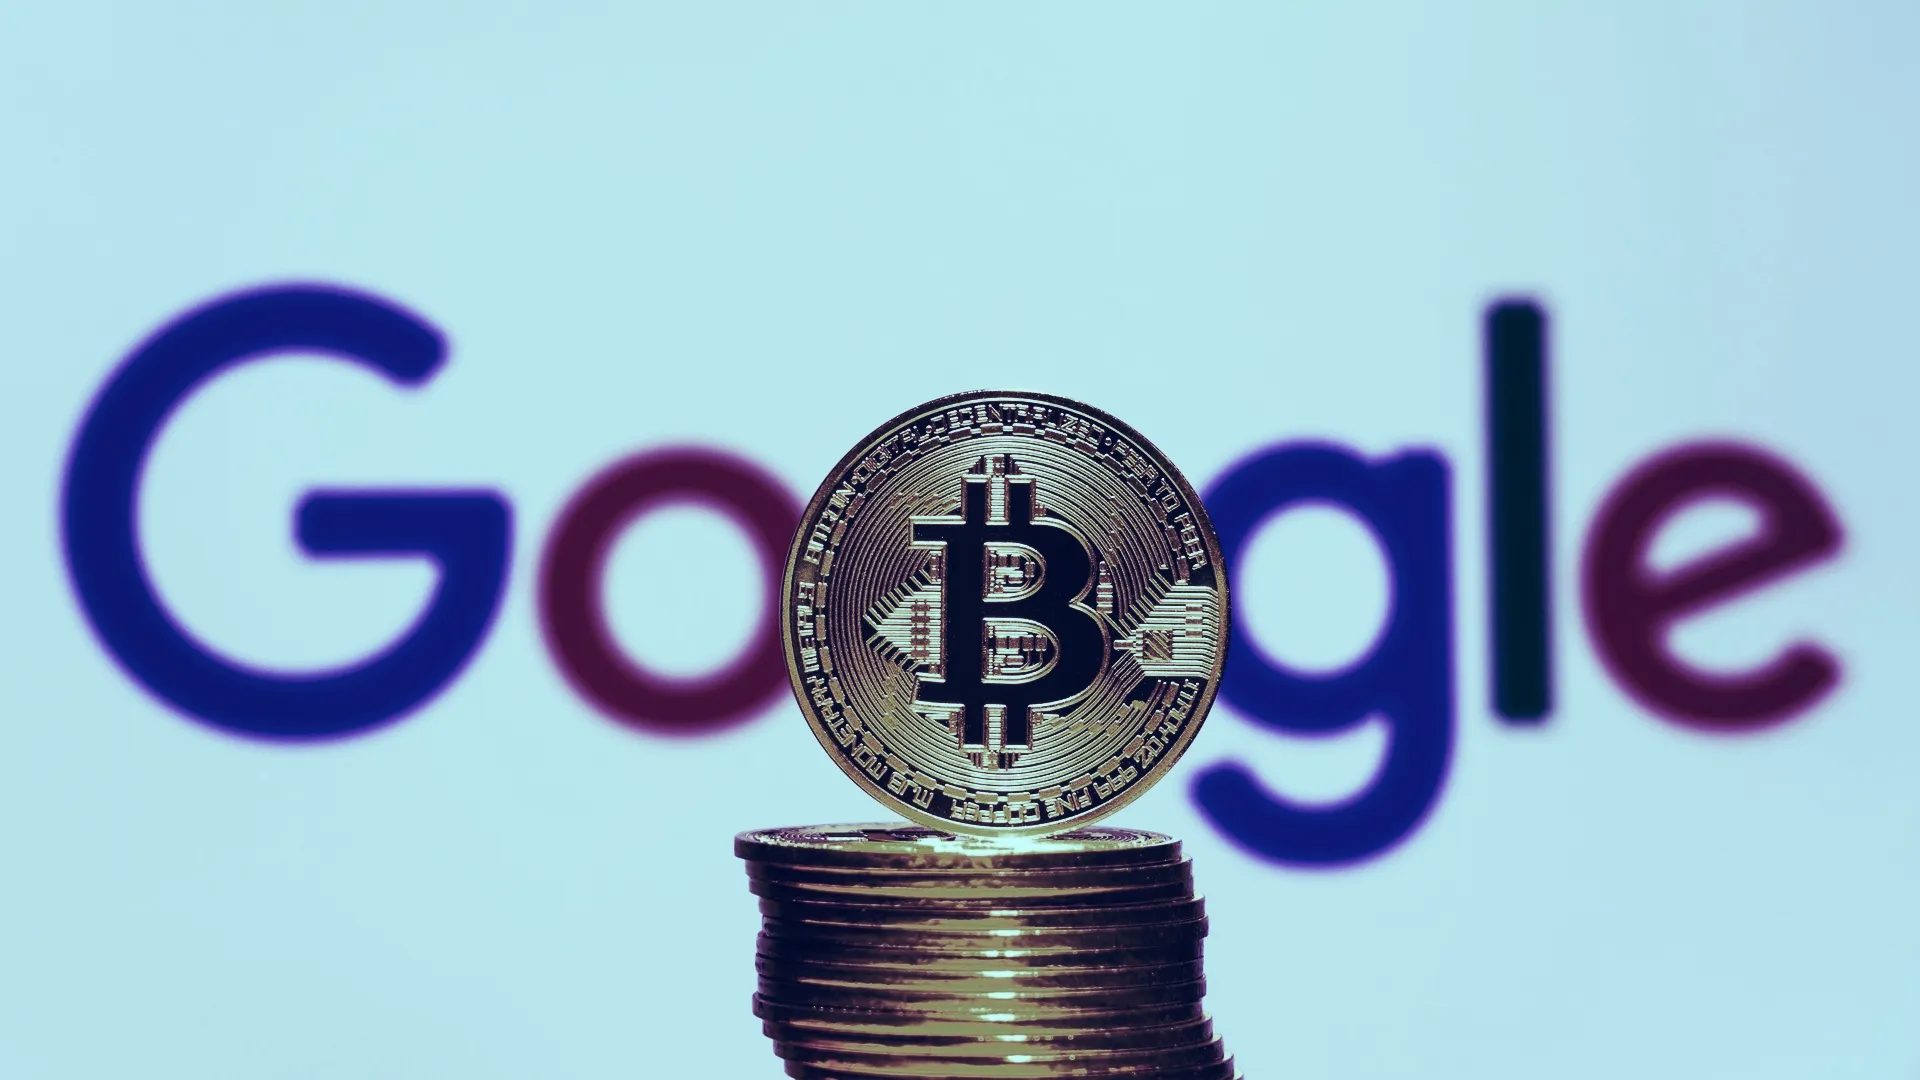 Google tiene una relación mixta con el Bitcoin y las criptomonedas. Imagen: Shutterstock